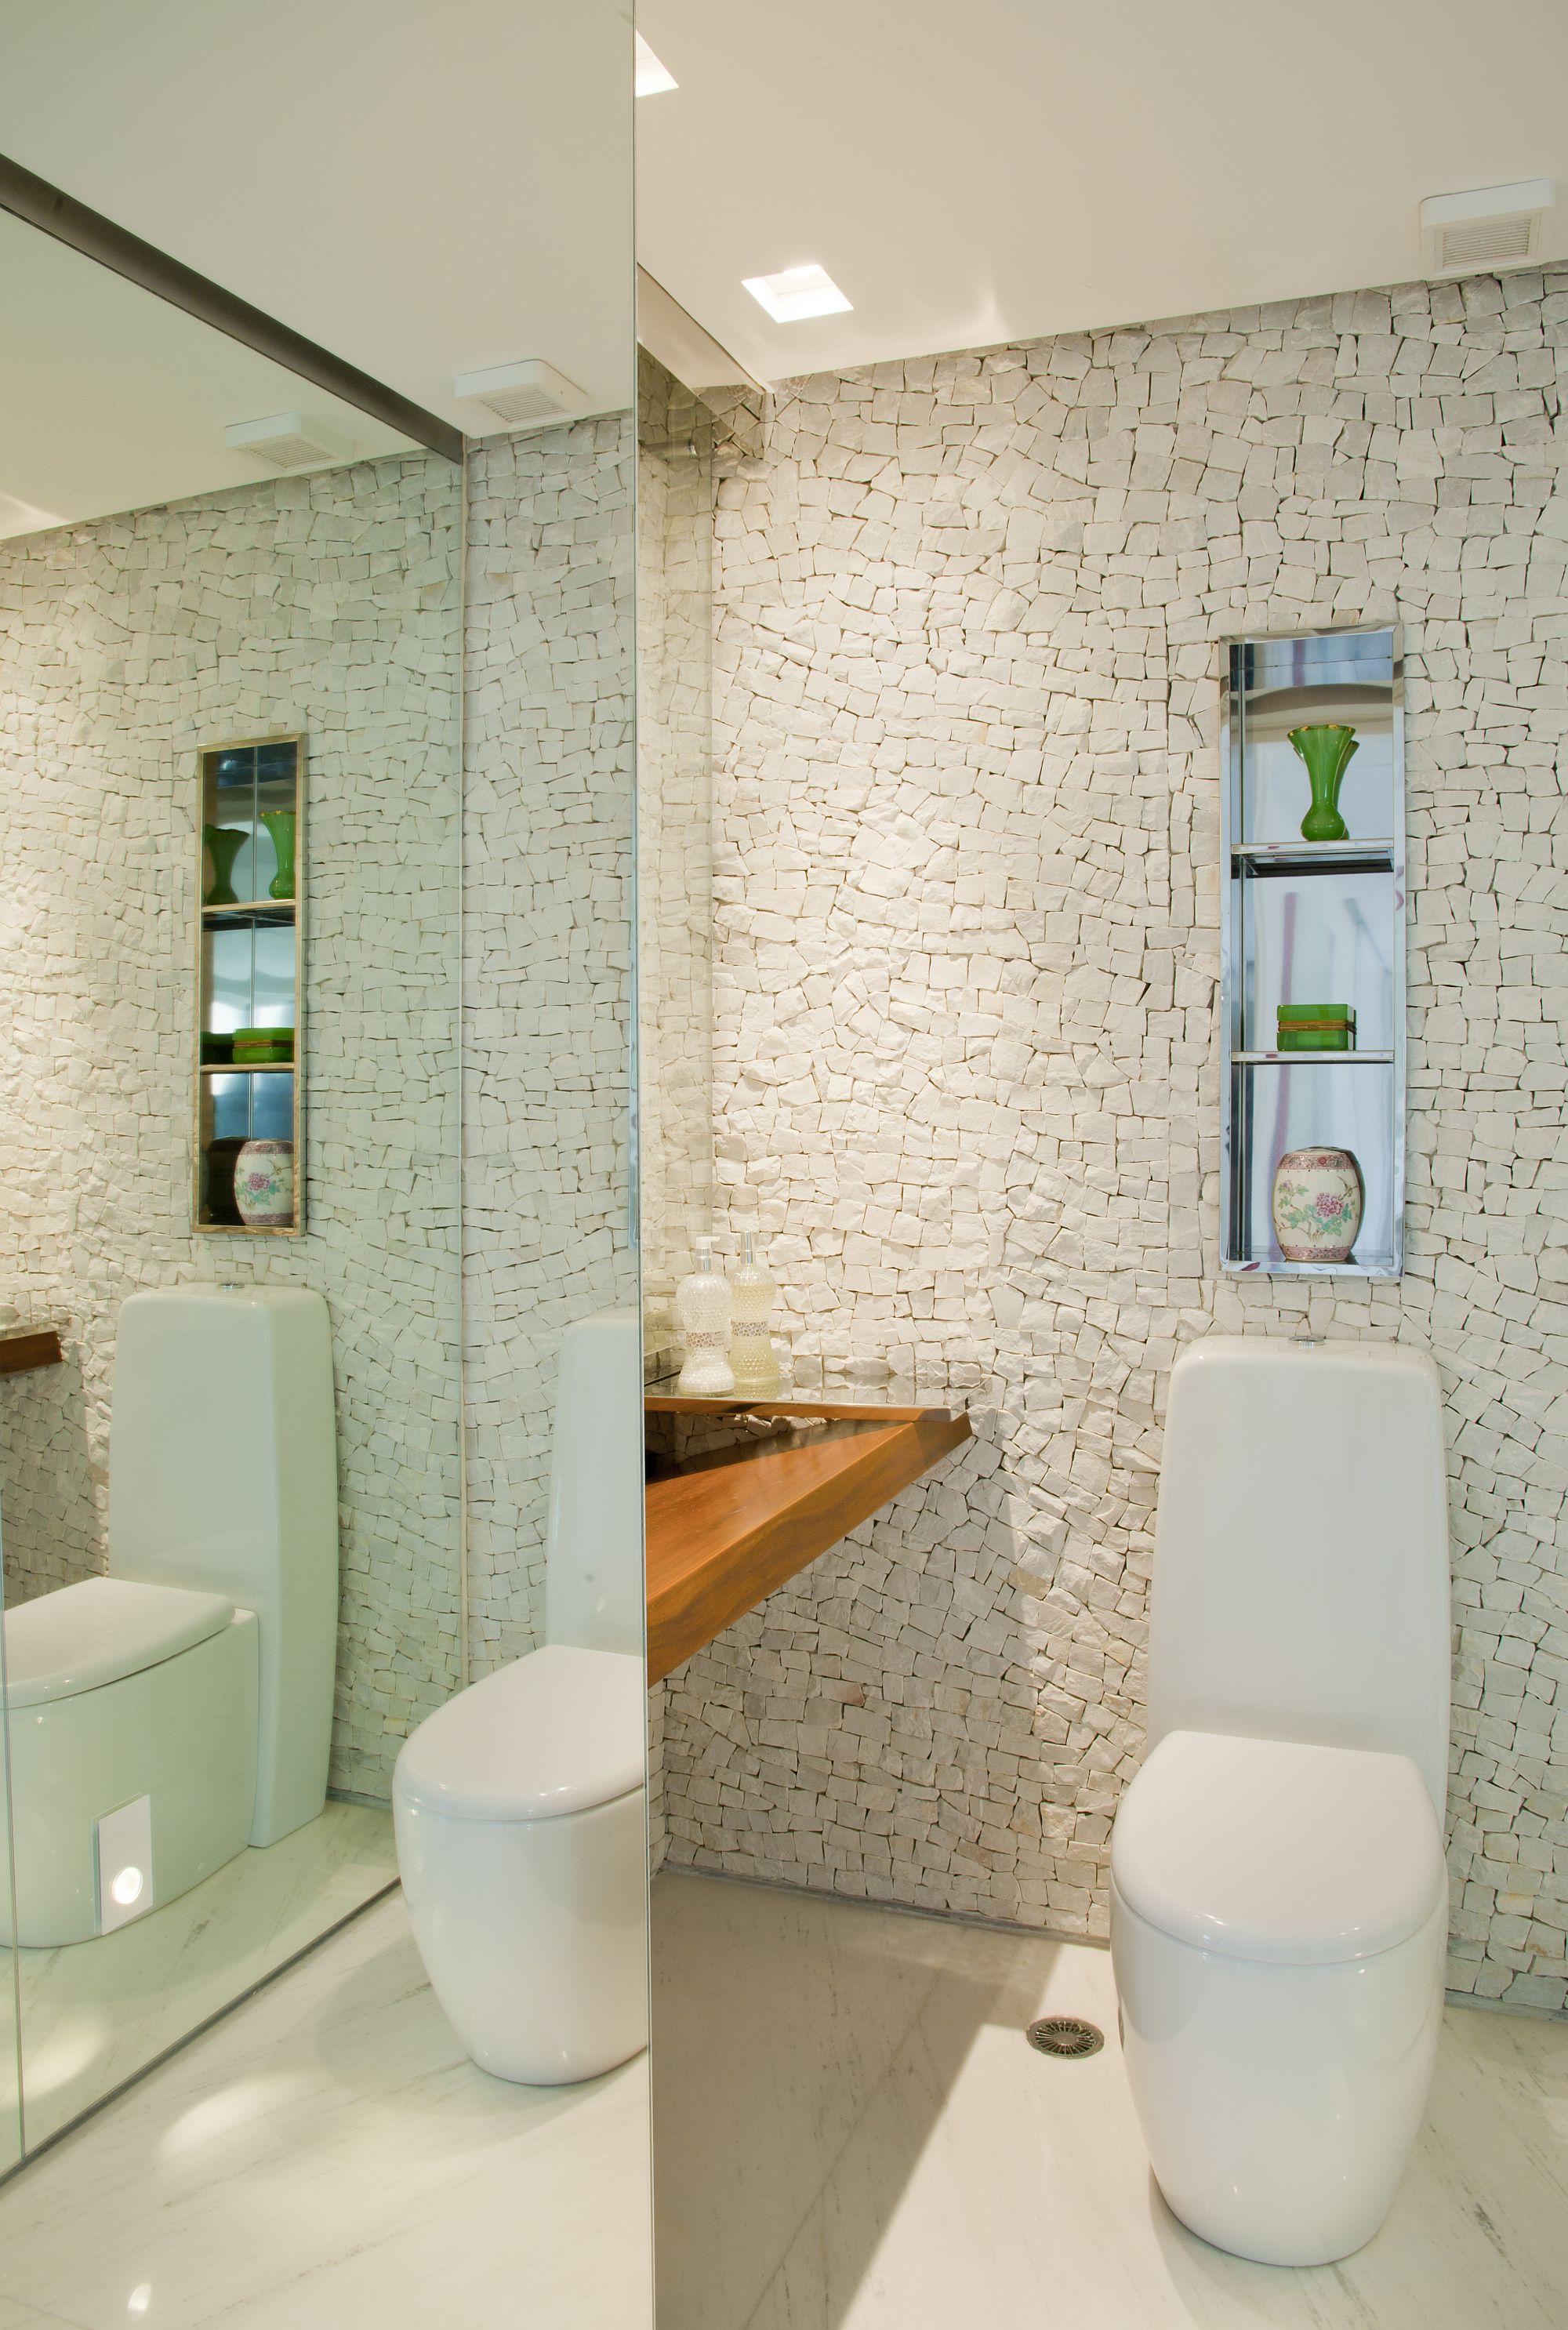 Custom-tiled-backsplash-for-the-contemporary-bathroom-in-white